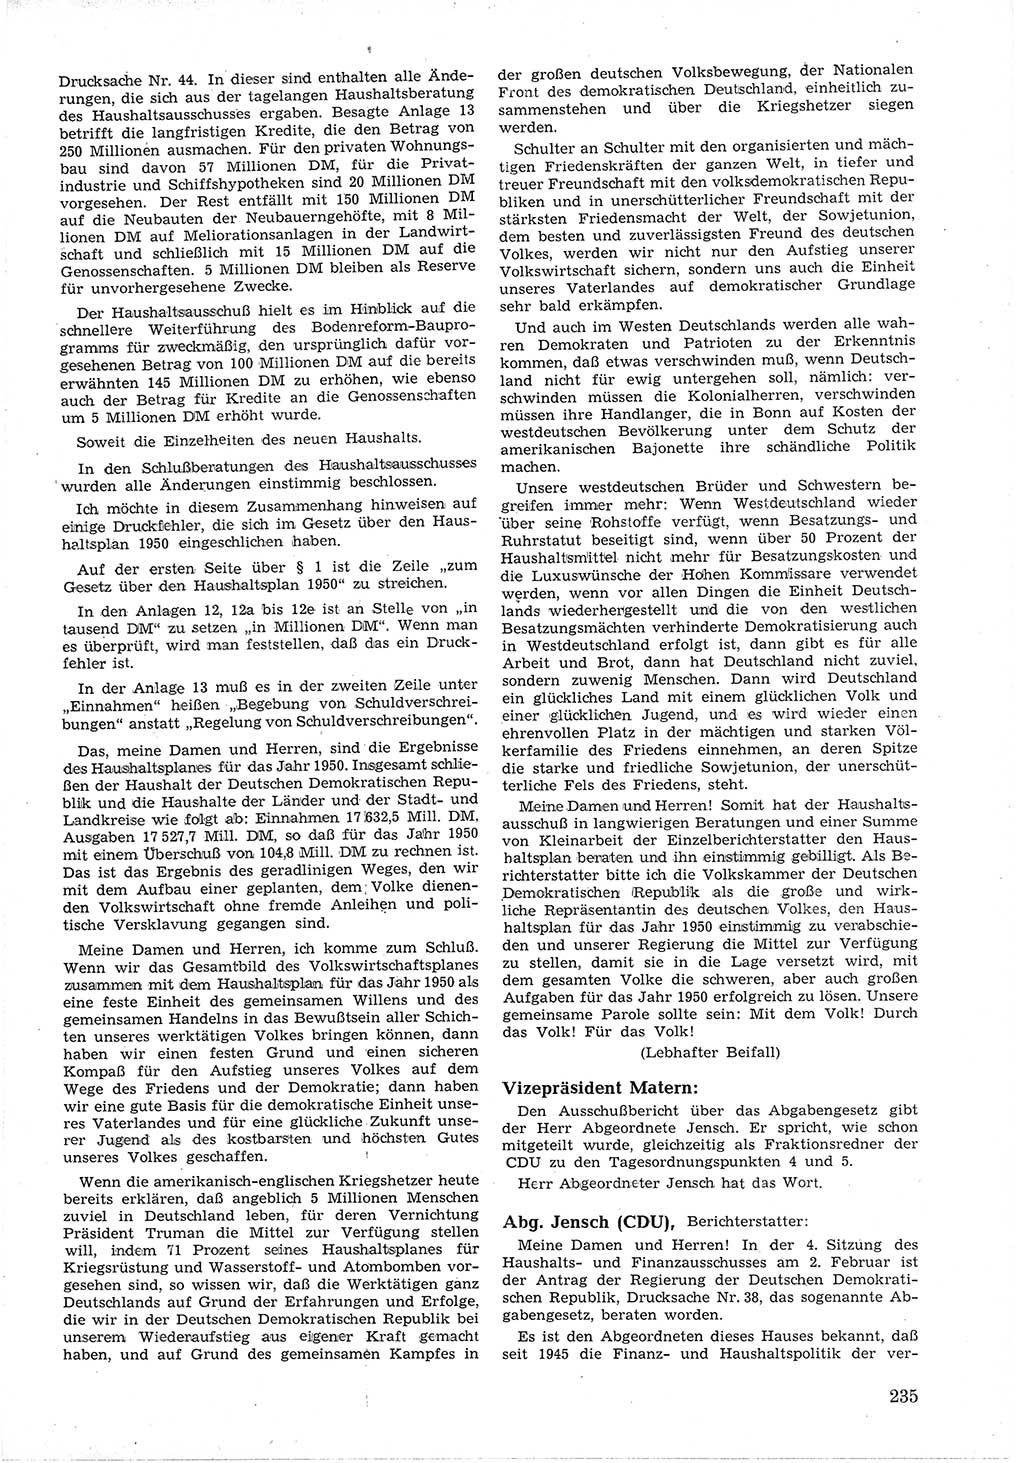 Provisorische Volkskammer (VK) der Deutschen Demokratischen Republik (DDR) 1949-1950, Dokument 249 (Prov. VK DDR 1949-1950, Dok. 249)